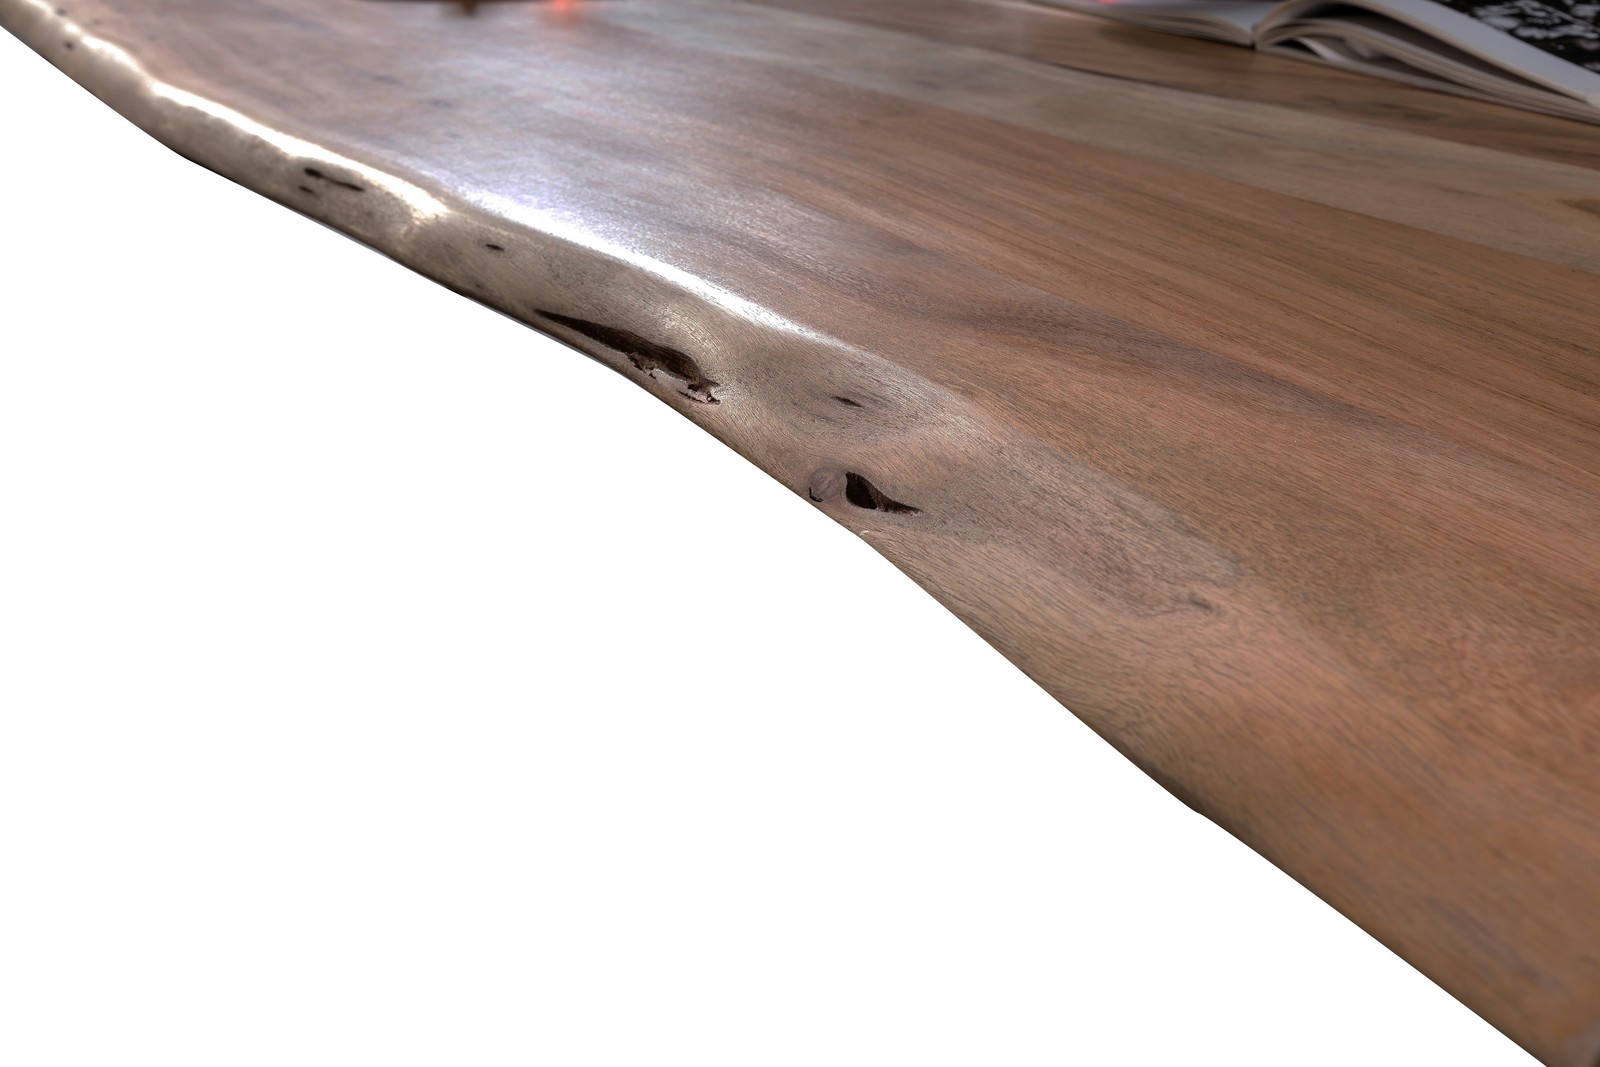 Baumkante-Esstisch TABLES & CO 200 x 100 cm Akazie nussfarben